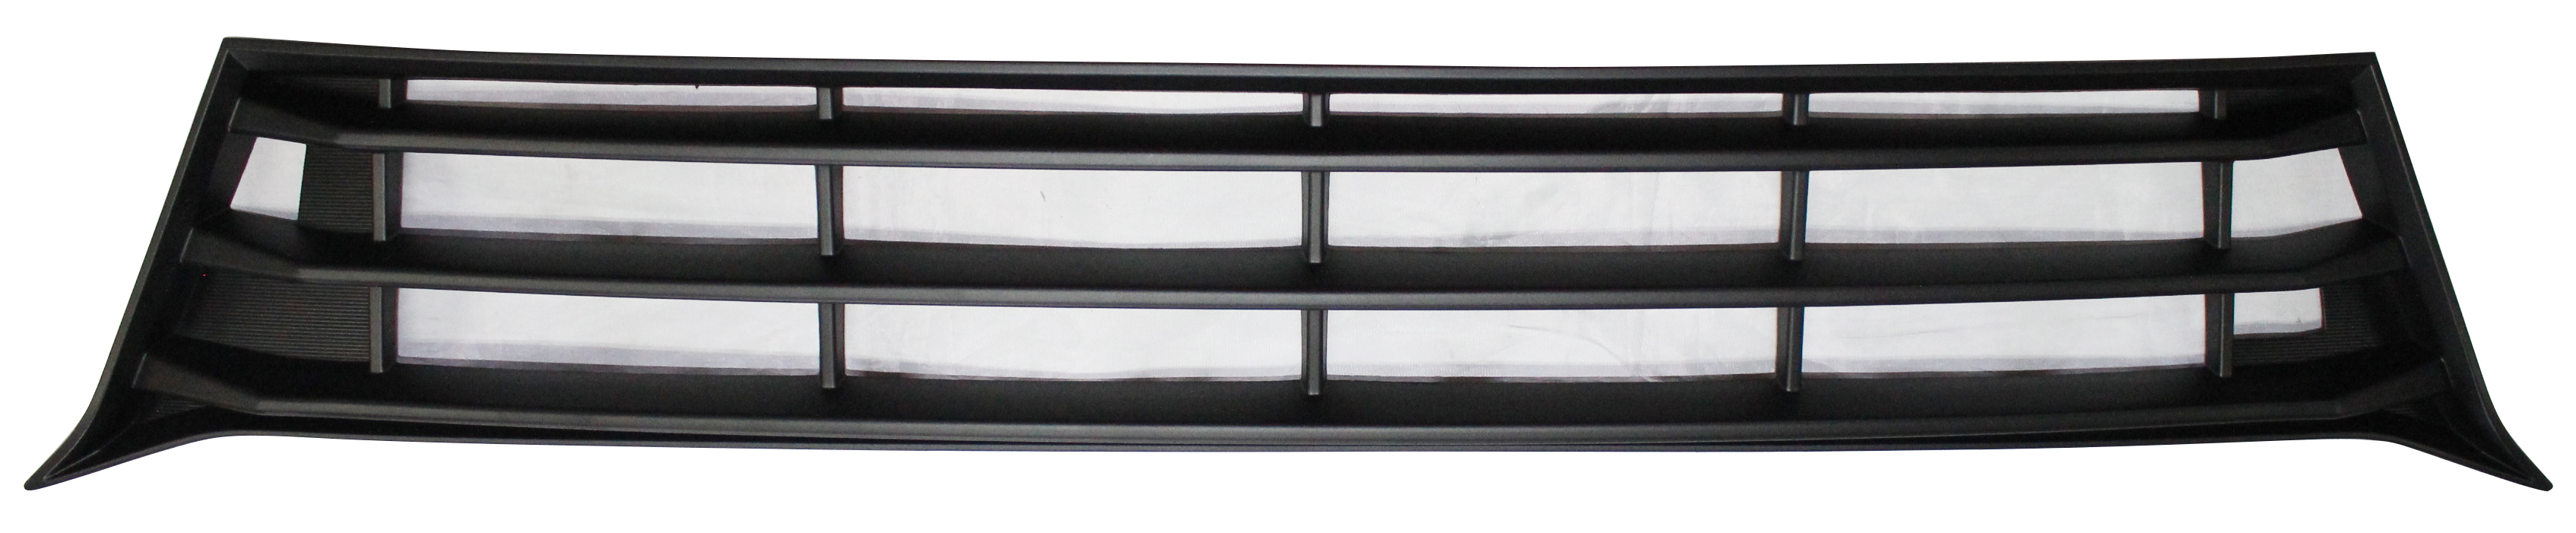 Aftermarket GRILLES for MITSUBISHI - RVR, RVR,16-17,Front bumper grille